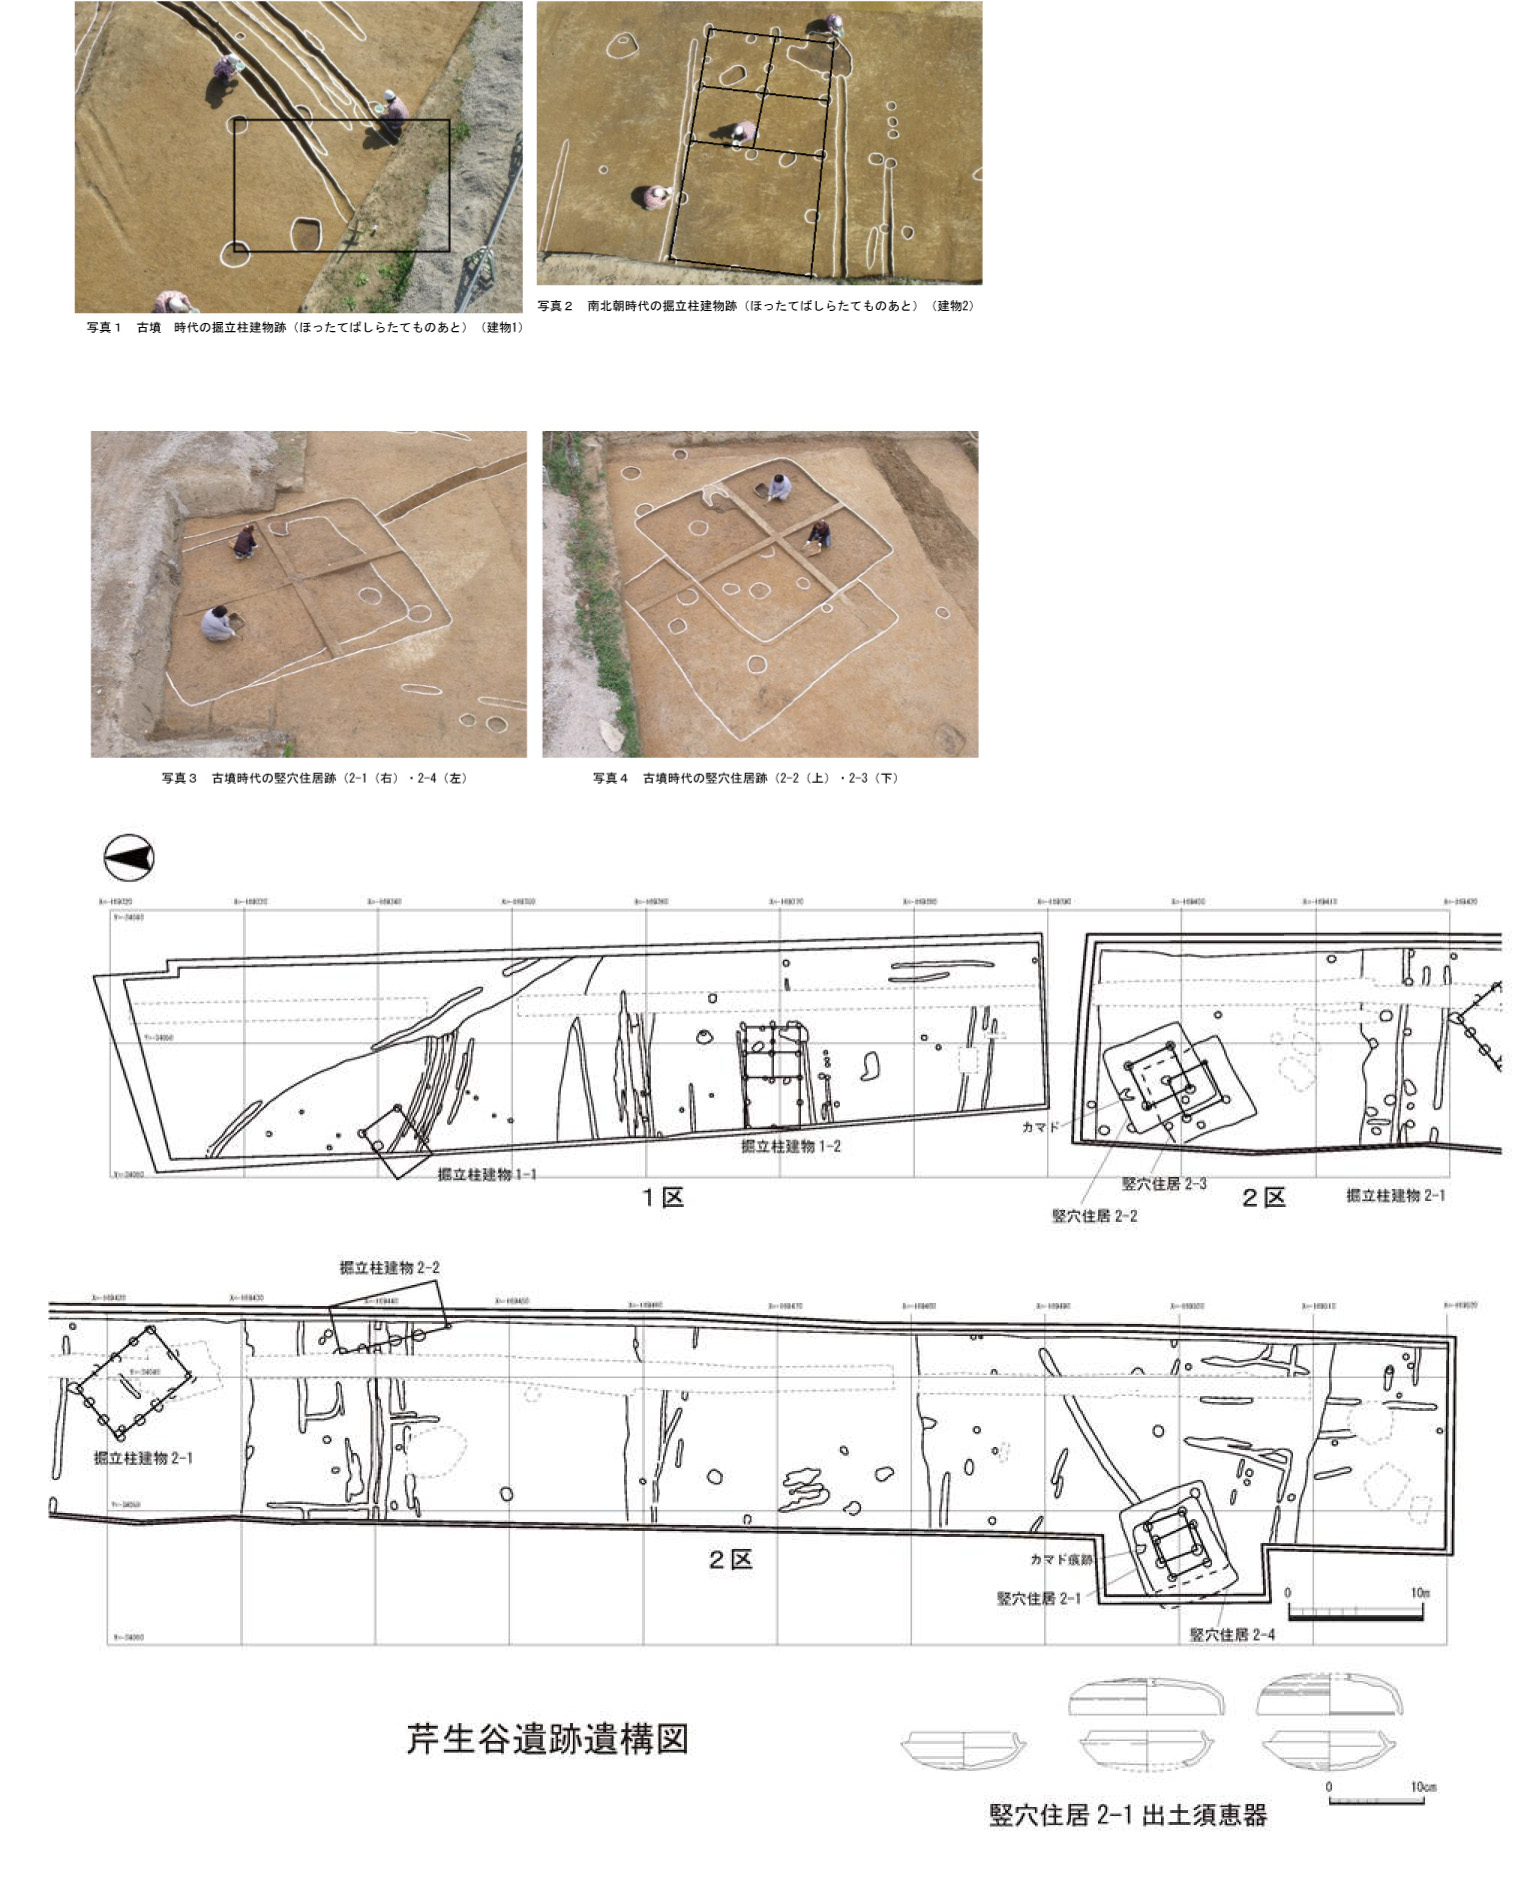 【図と写真】ほったてばしらたてもの、竪穴住居と発見された遺構の平面図